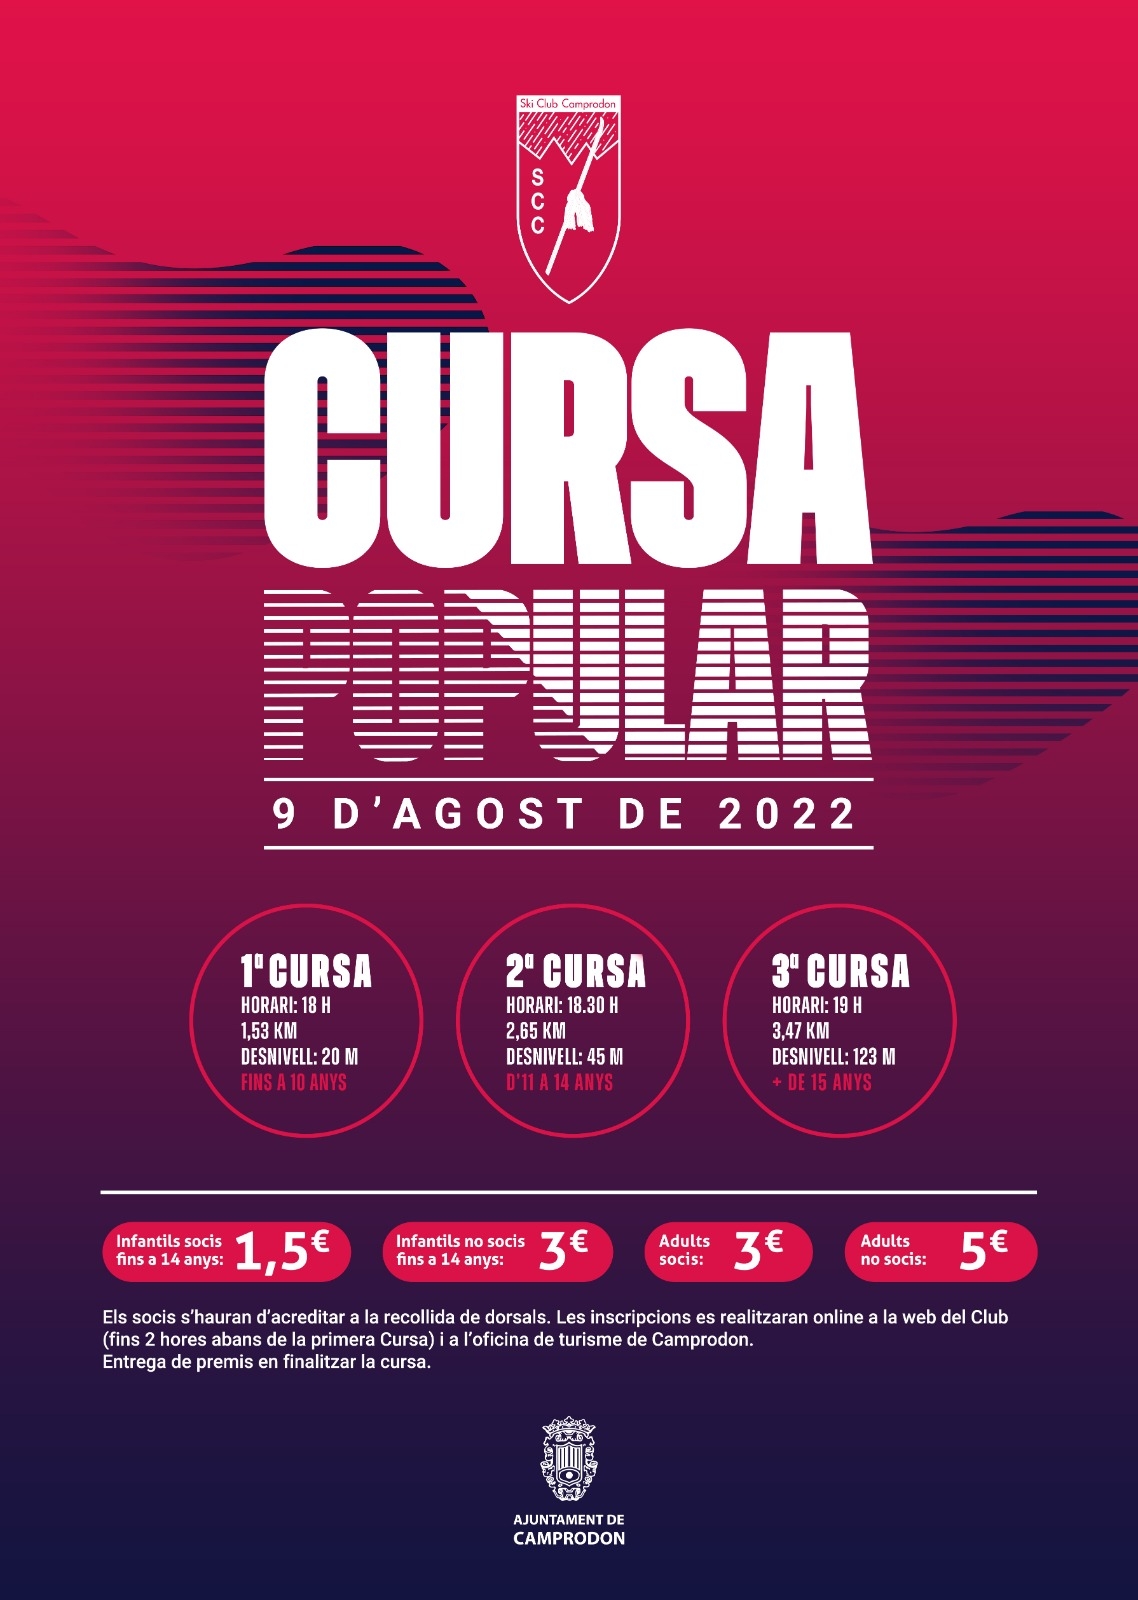 CURSA POPULAR CAMPRODON 2022 - Register